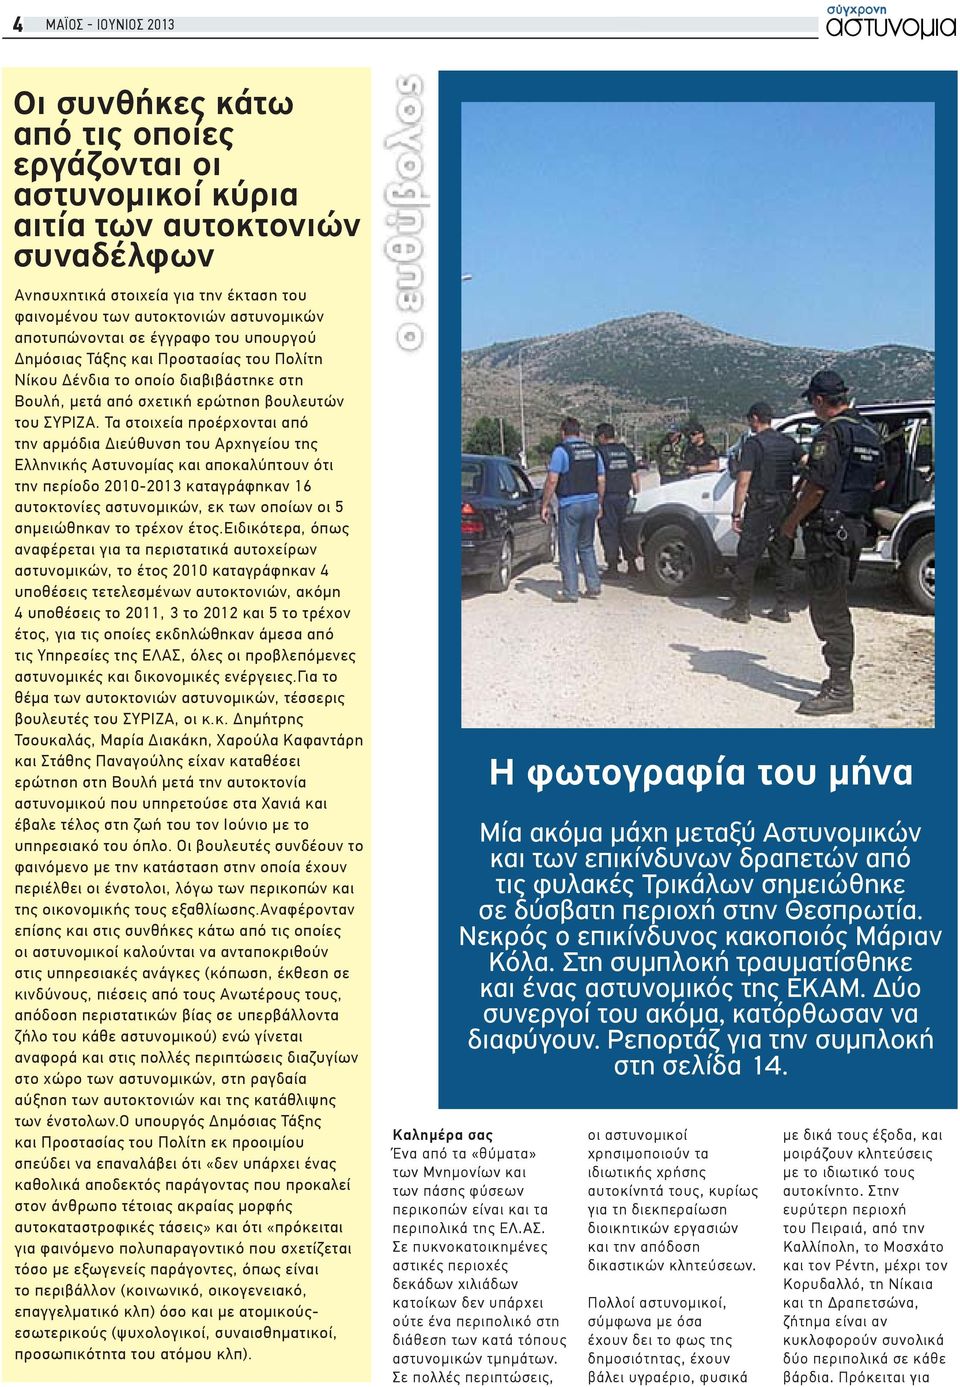 Τα στοιχεία προέρχονται από την αρμόδια Διεύθυνση του Αρχηγείου της Ελληνικής Αστυνομίας και αποκαλύπτουν ότι την περίοδο 2010-2013 καταγράφηκαν 16 αυτοκτονίες αστυνομικών, εκ των οποίων οι 5